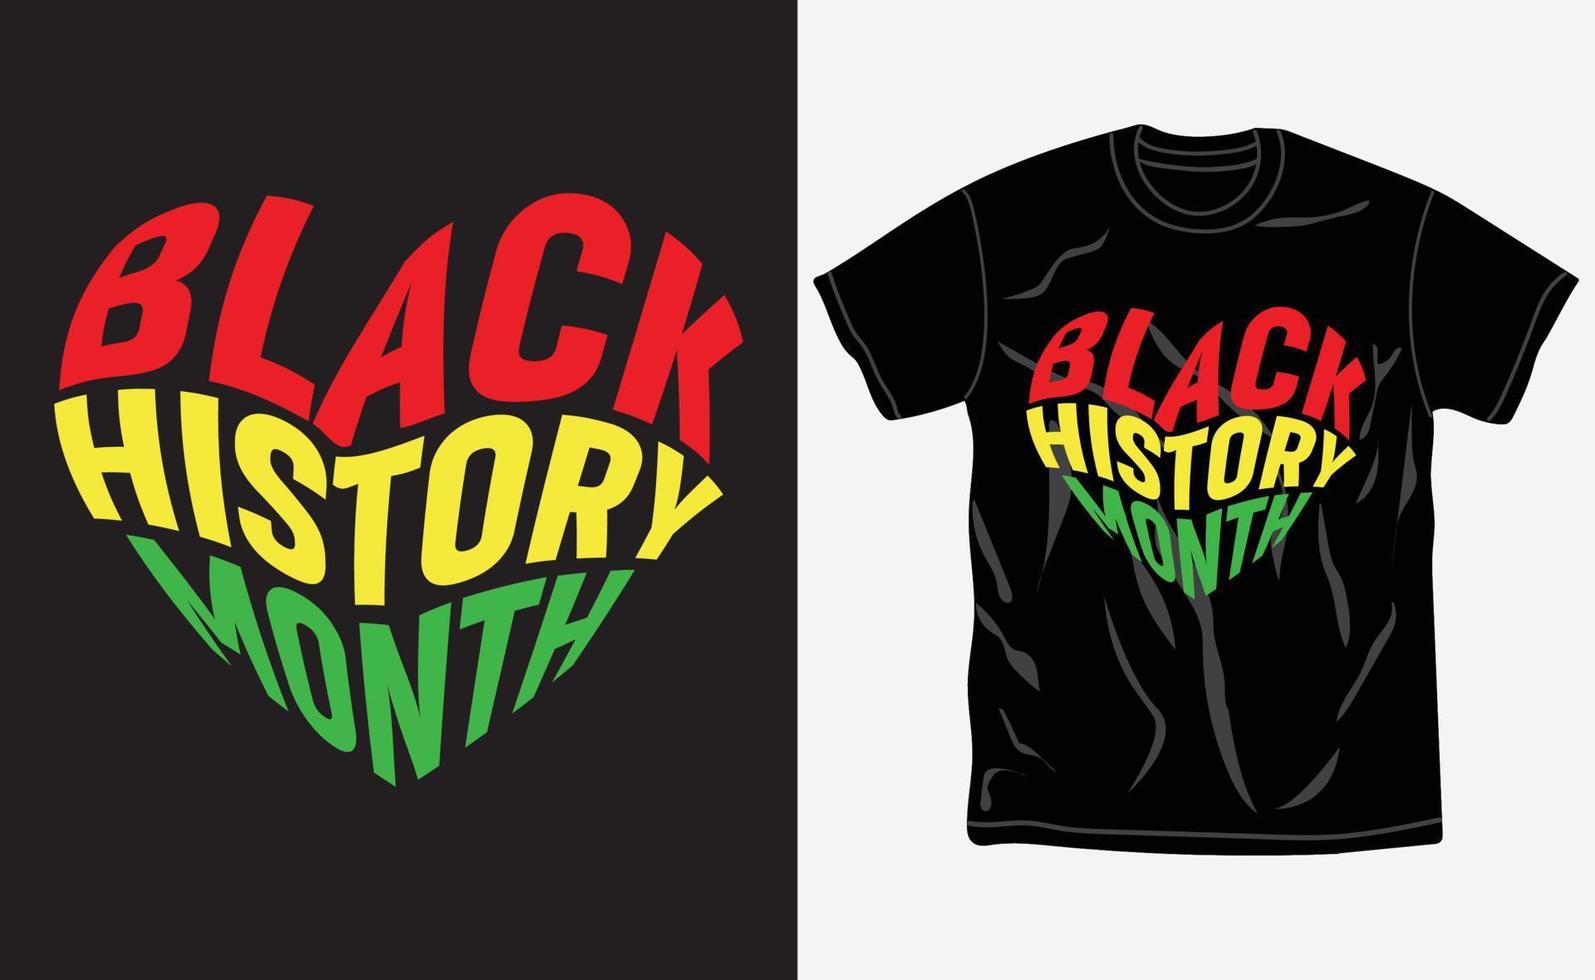 zwart geschiedenis maand t-shirt ontwerp, citaten, juneteenth t-shirt, typografie t-shirt vector grafisch, ten volle bewerkbare en afdrukbare vector sjabloon.